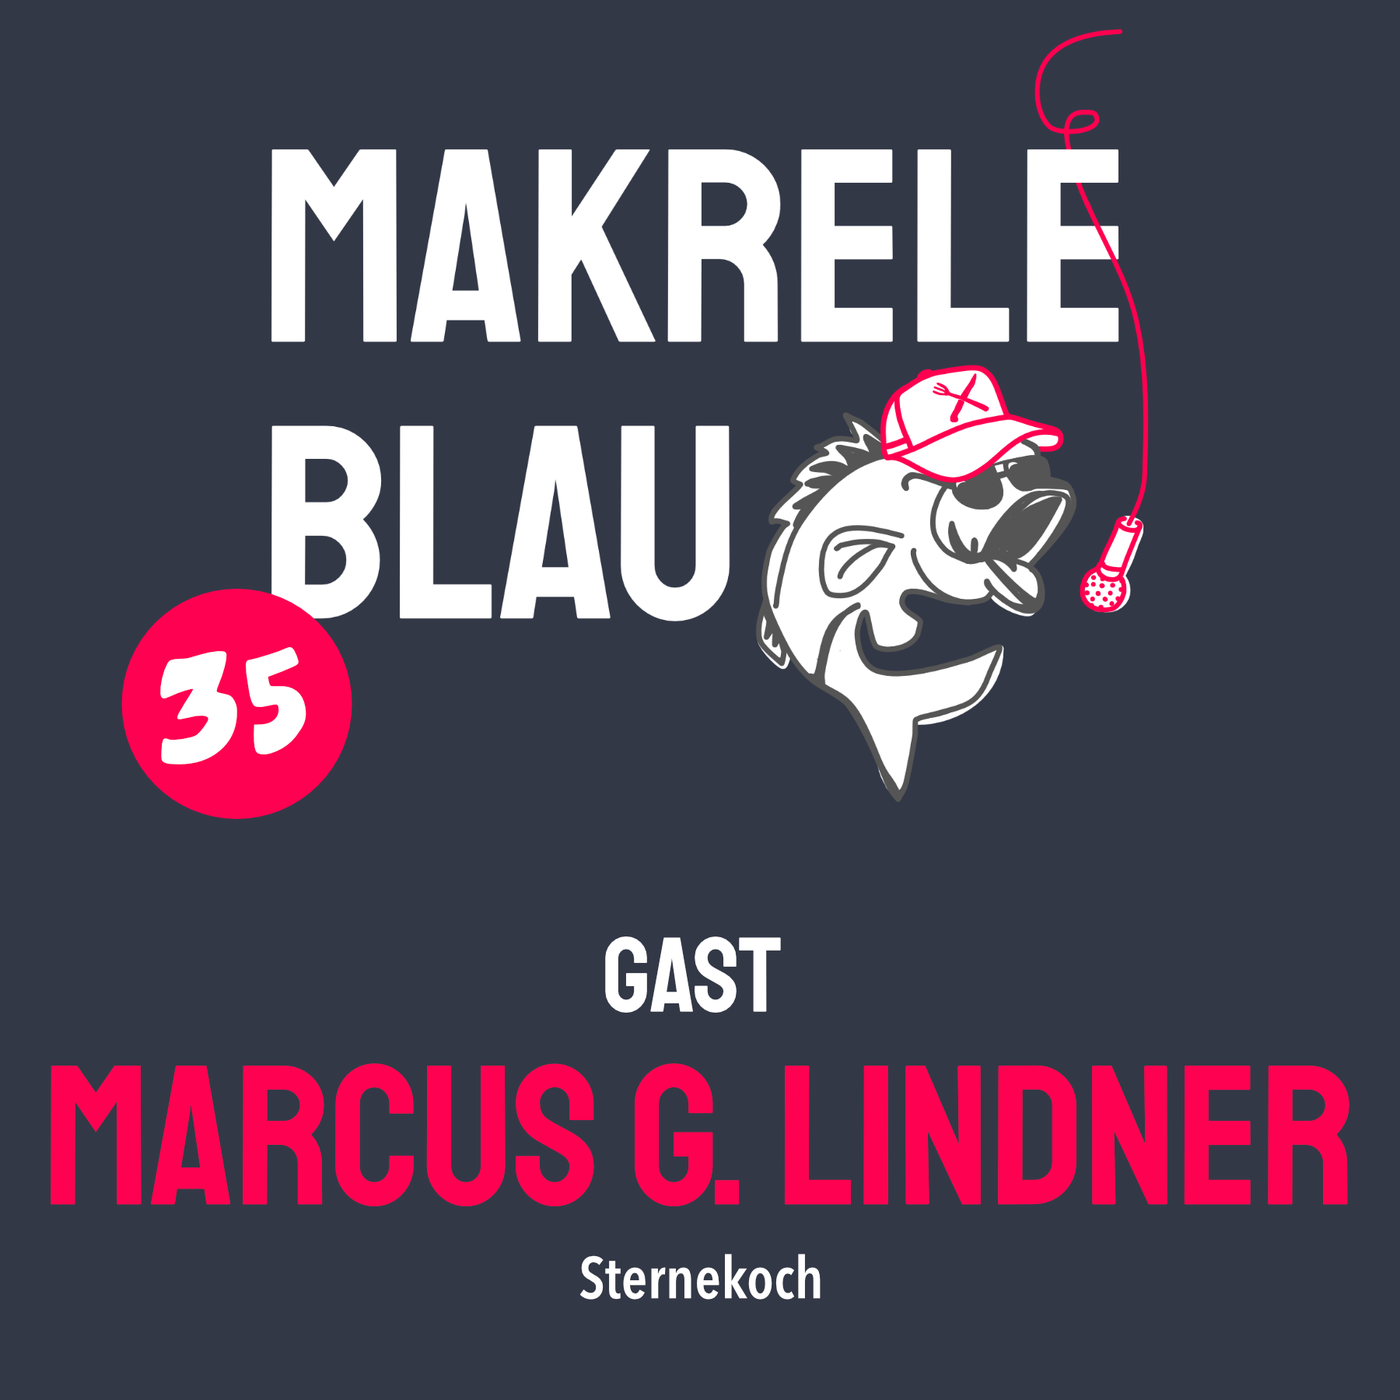 Makrele Blau #35 – im Luftschloss, mit em Marcus G. Lindner